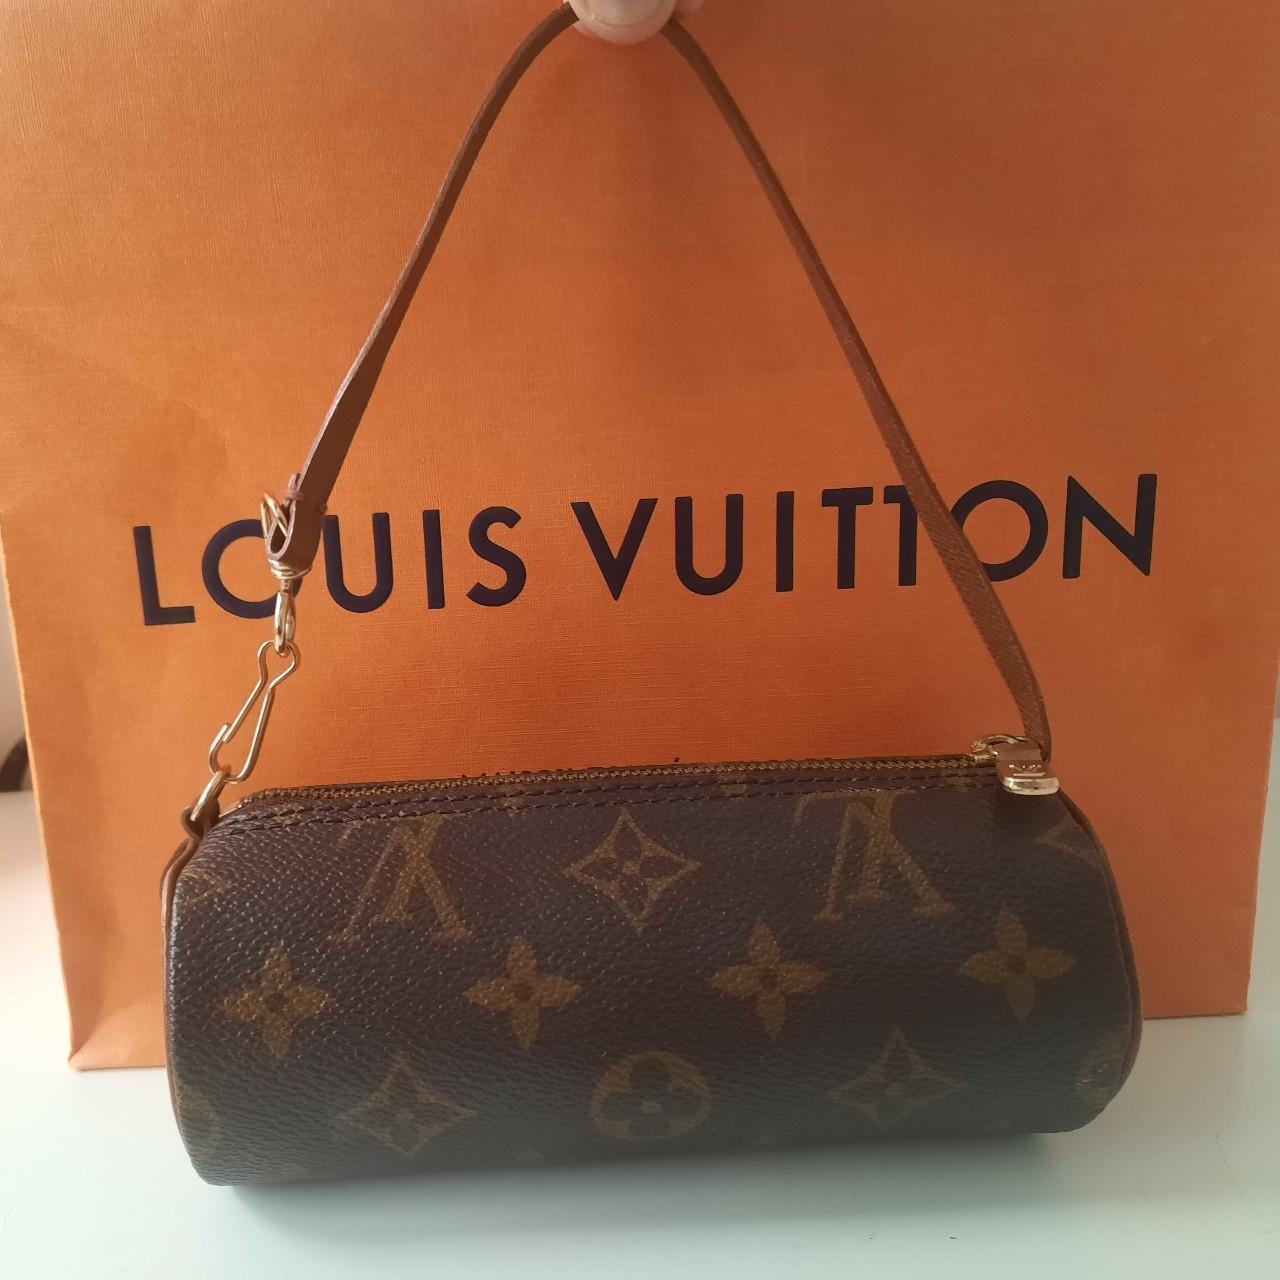 Authentic Vintage Louis Vuitton purse - Depop